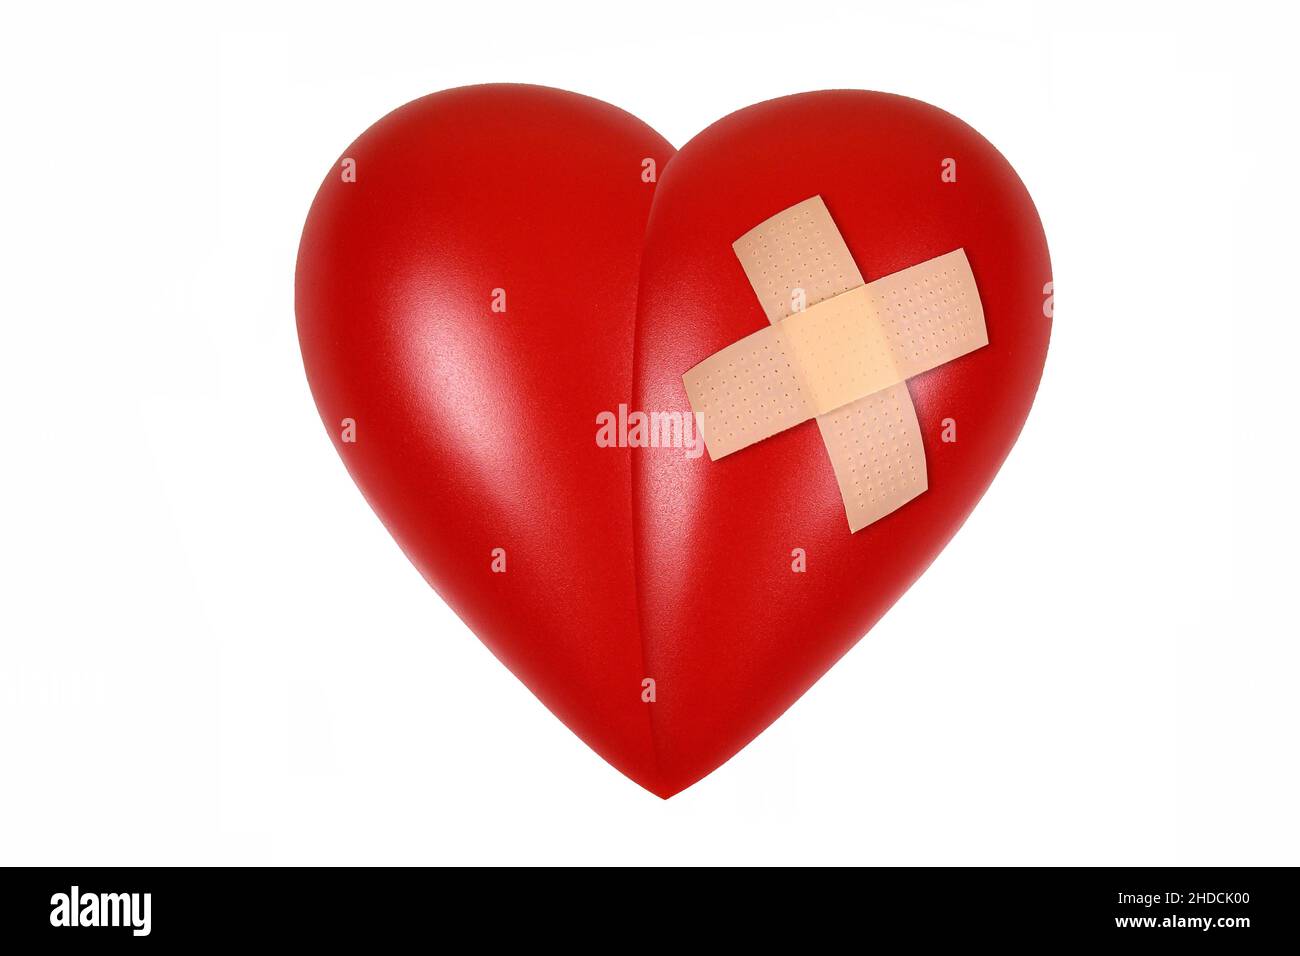 Rotes Herz, Organ, Gesundheit, Körperteil, Pflaster, verwundetes Herz, Stock Photo